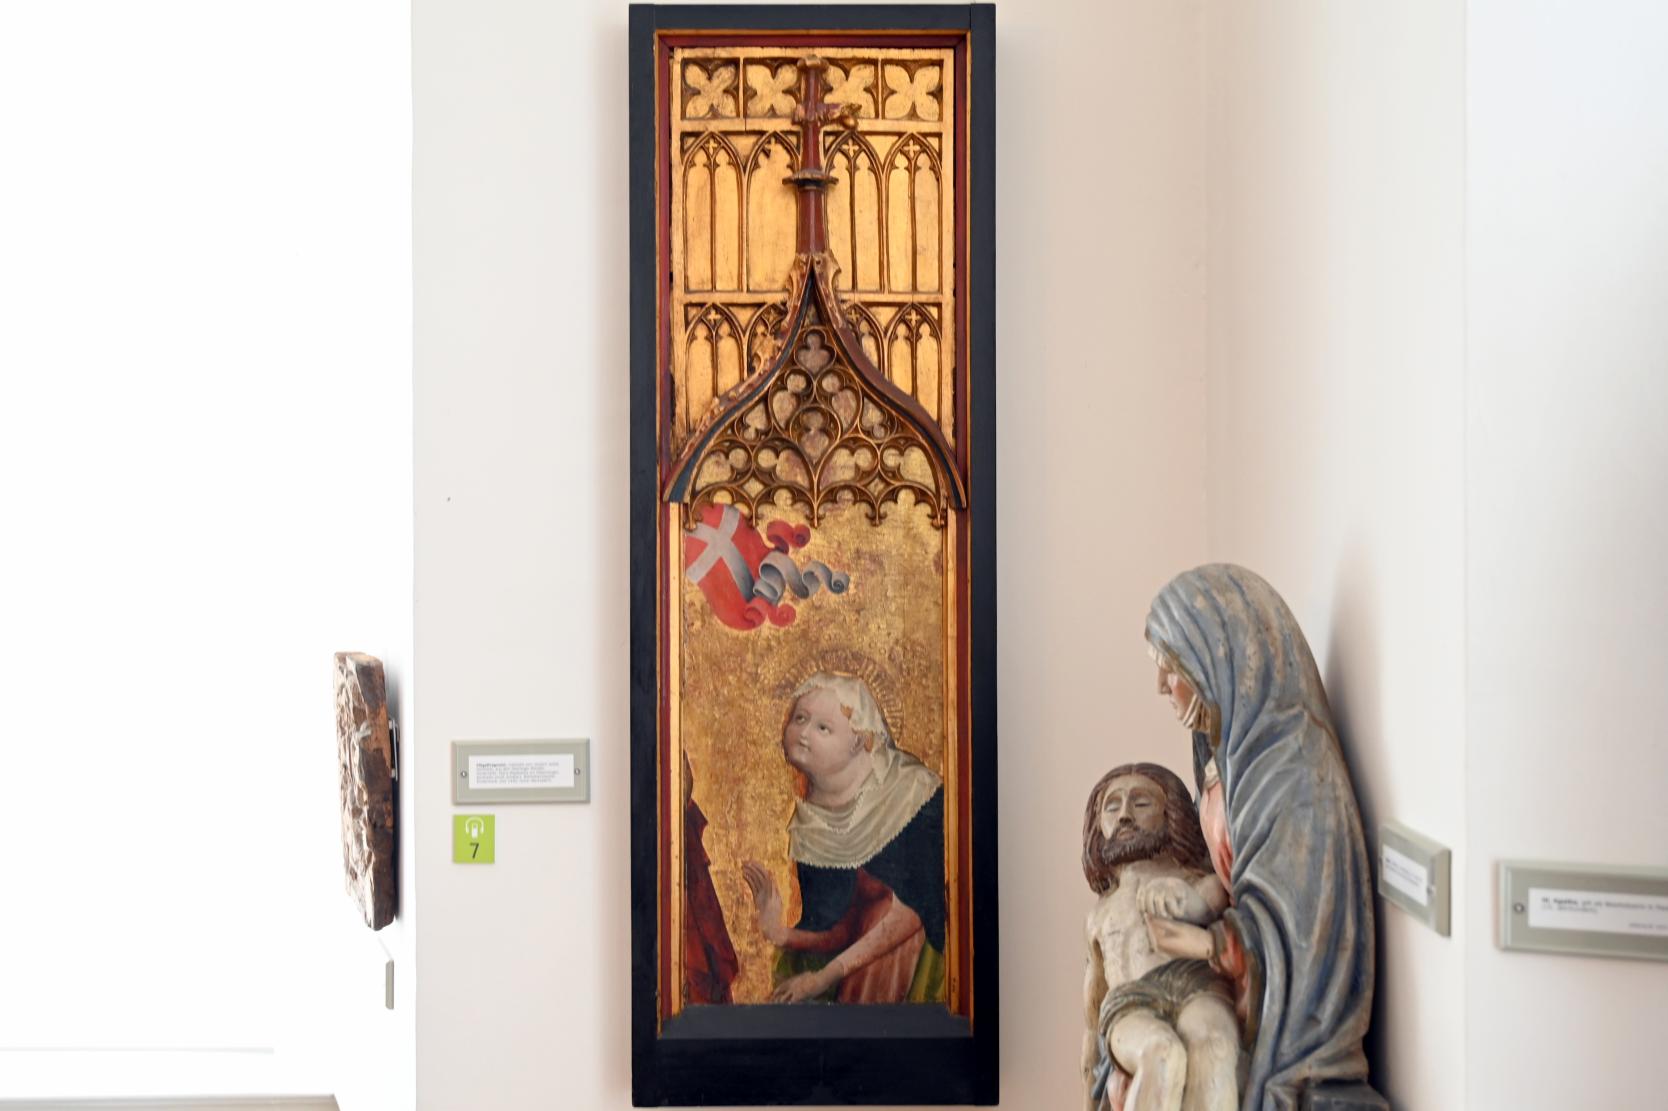 Flügelfragment mit der Hl. Maria Magdalena am Ostermorgen, Überlingen, Münster St. Nikolaus, jetzt Überlingen, Städtisches Museum, Gotisches Zimmer, vor 1430